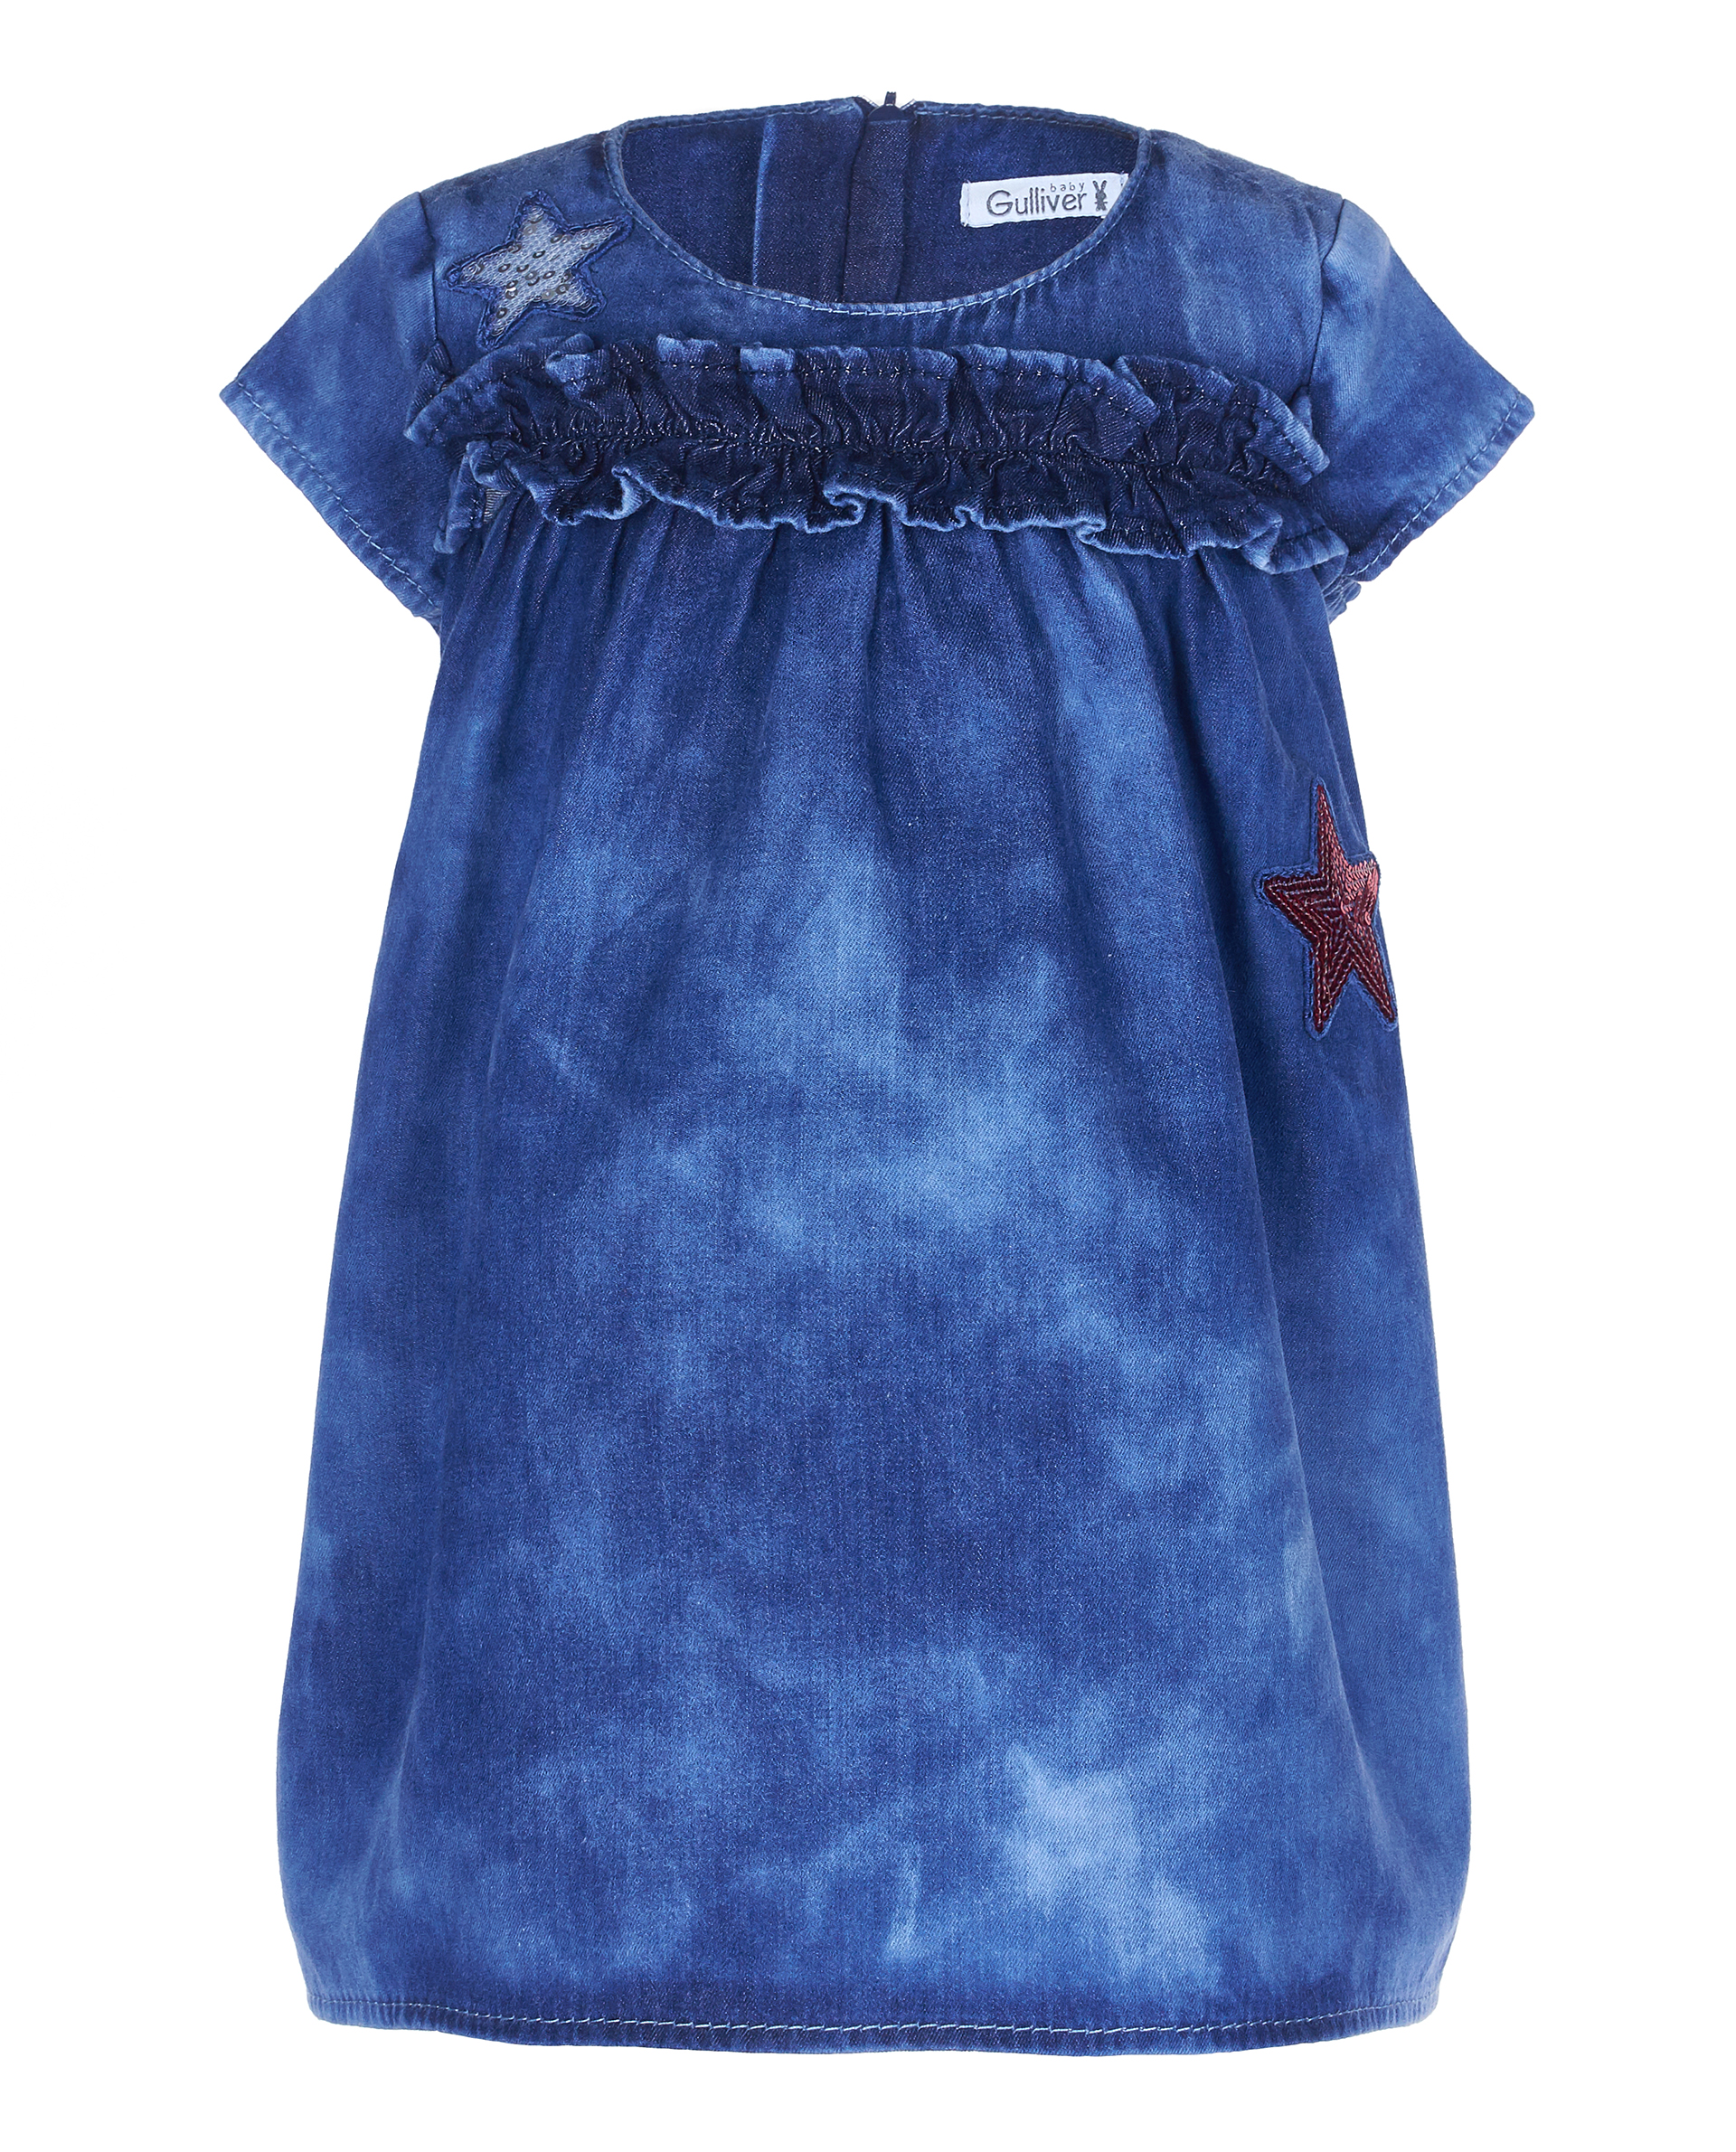 Купить 11930GBC2502, Джинсовое платье с декором Gulliver, Gulliver Baby, синий, 74, Женский, ВЕСНА/ЛЕТО 2019 (shop: GulliverMarket Gulliver Market)